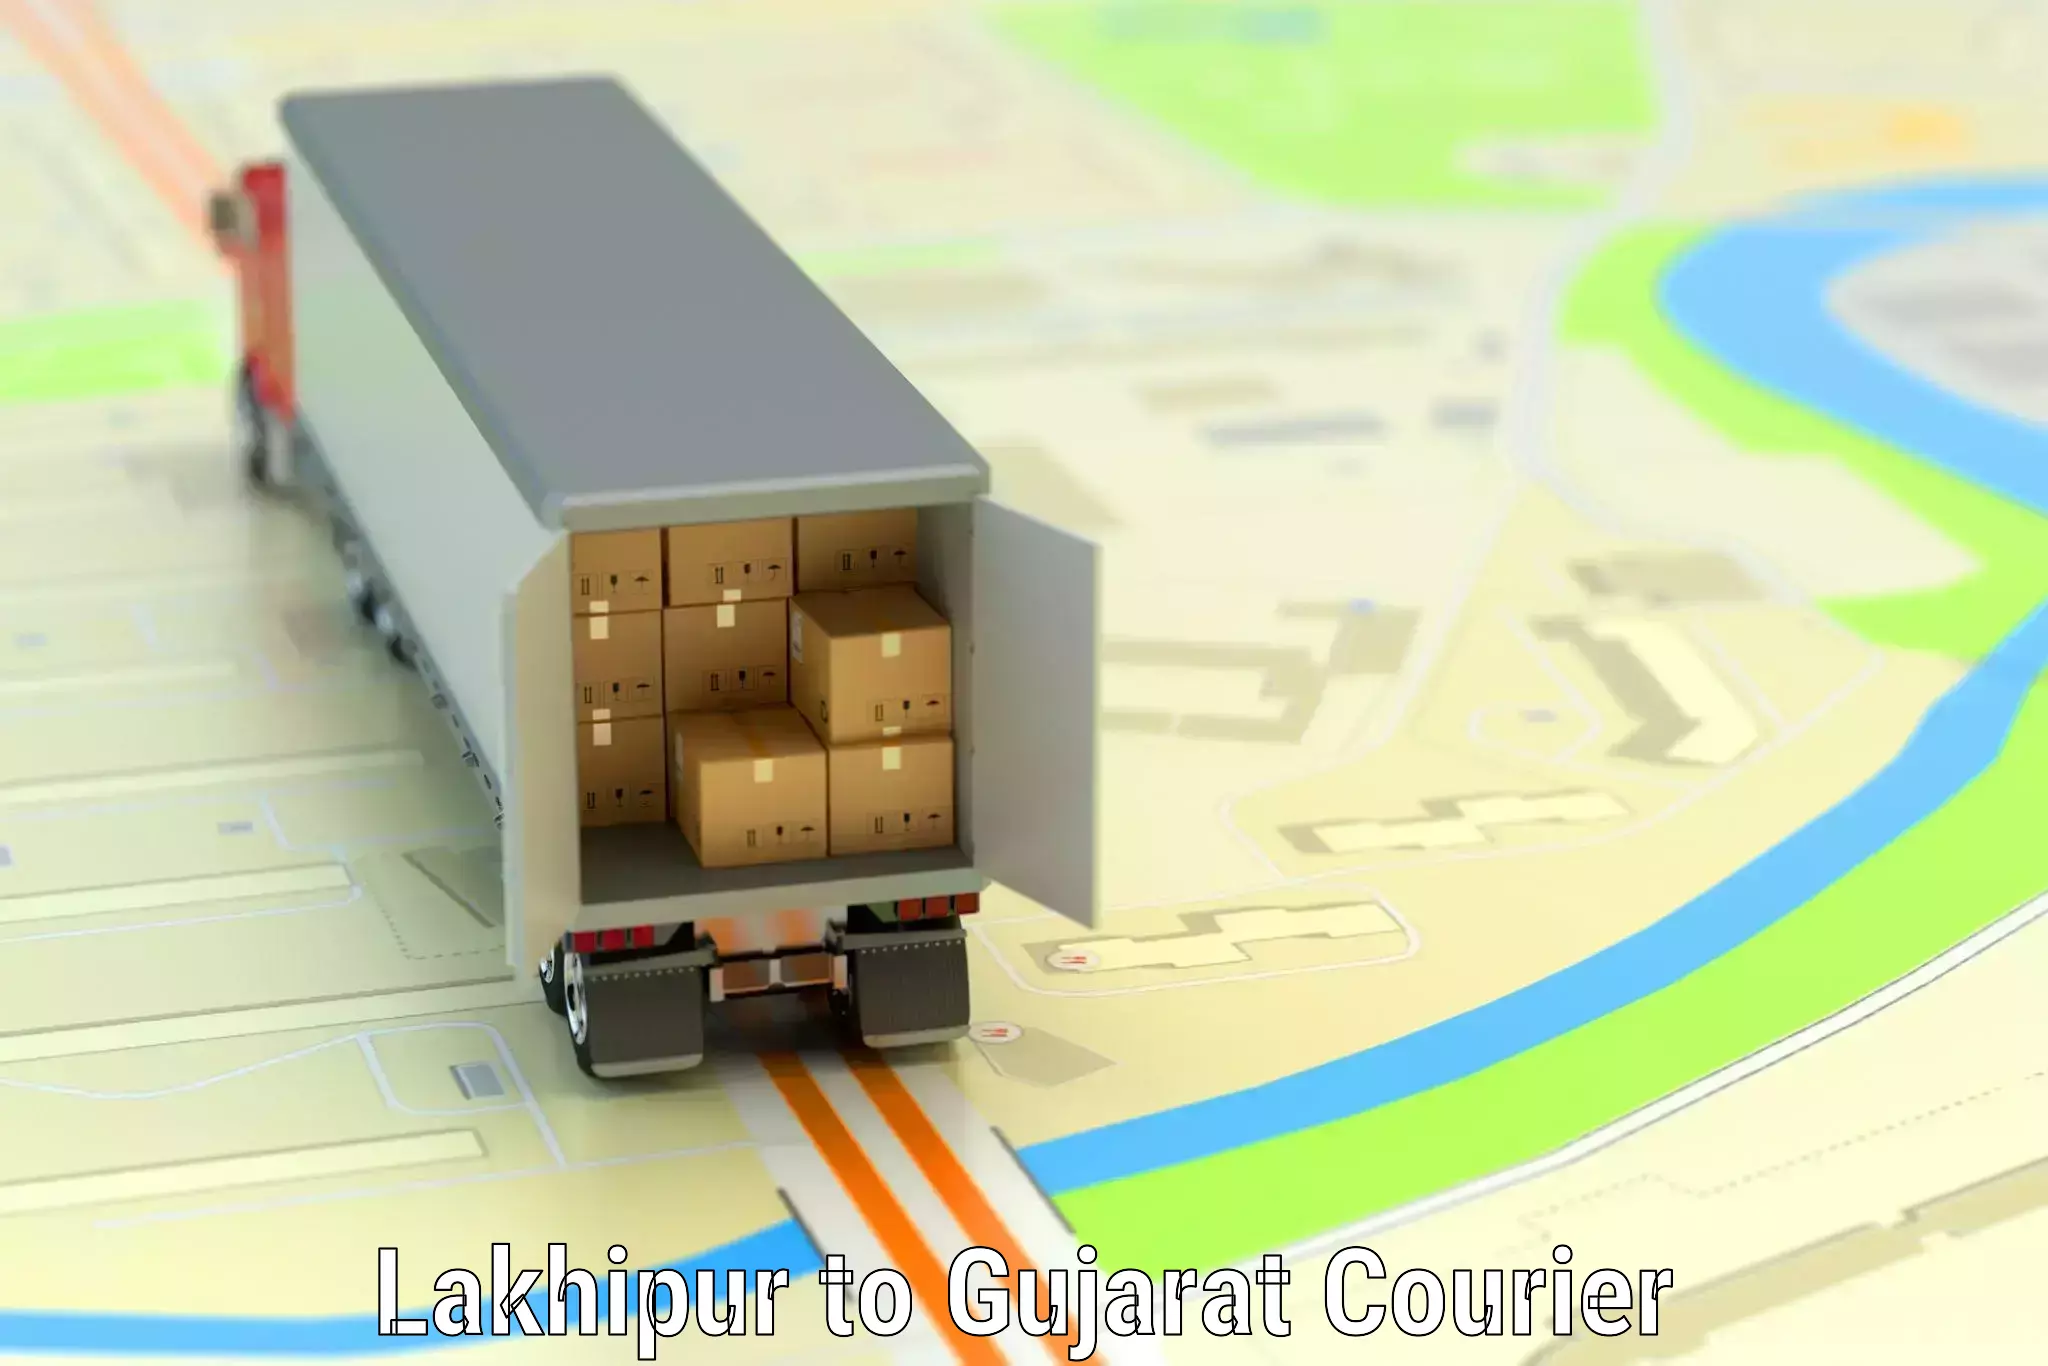 Luggage transport company Lakhipur to Gujarat